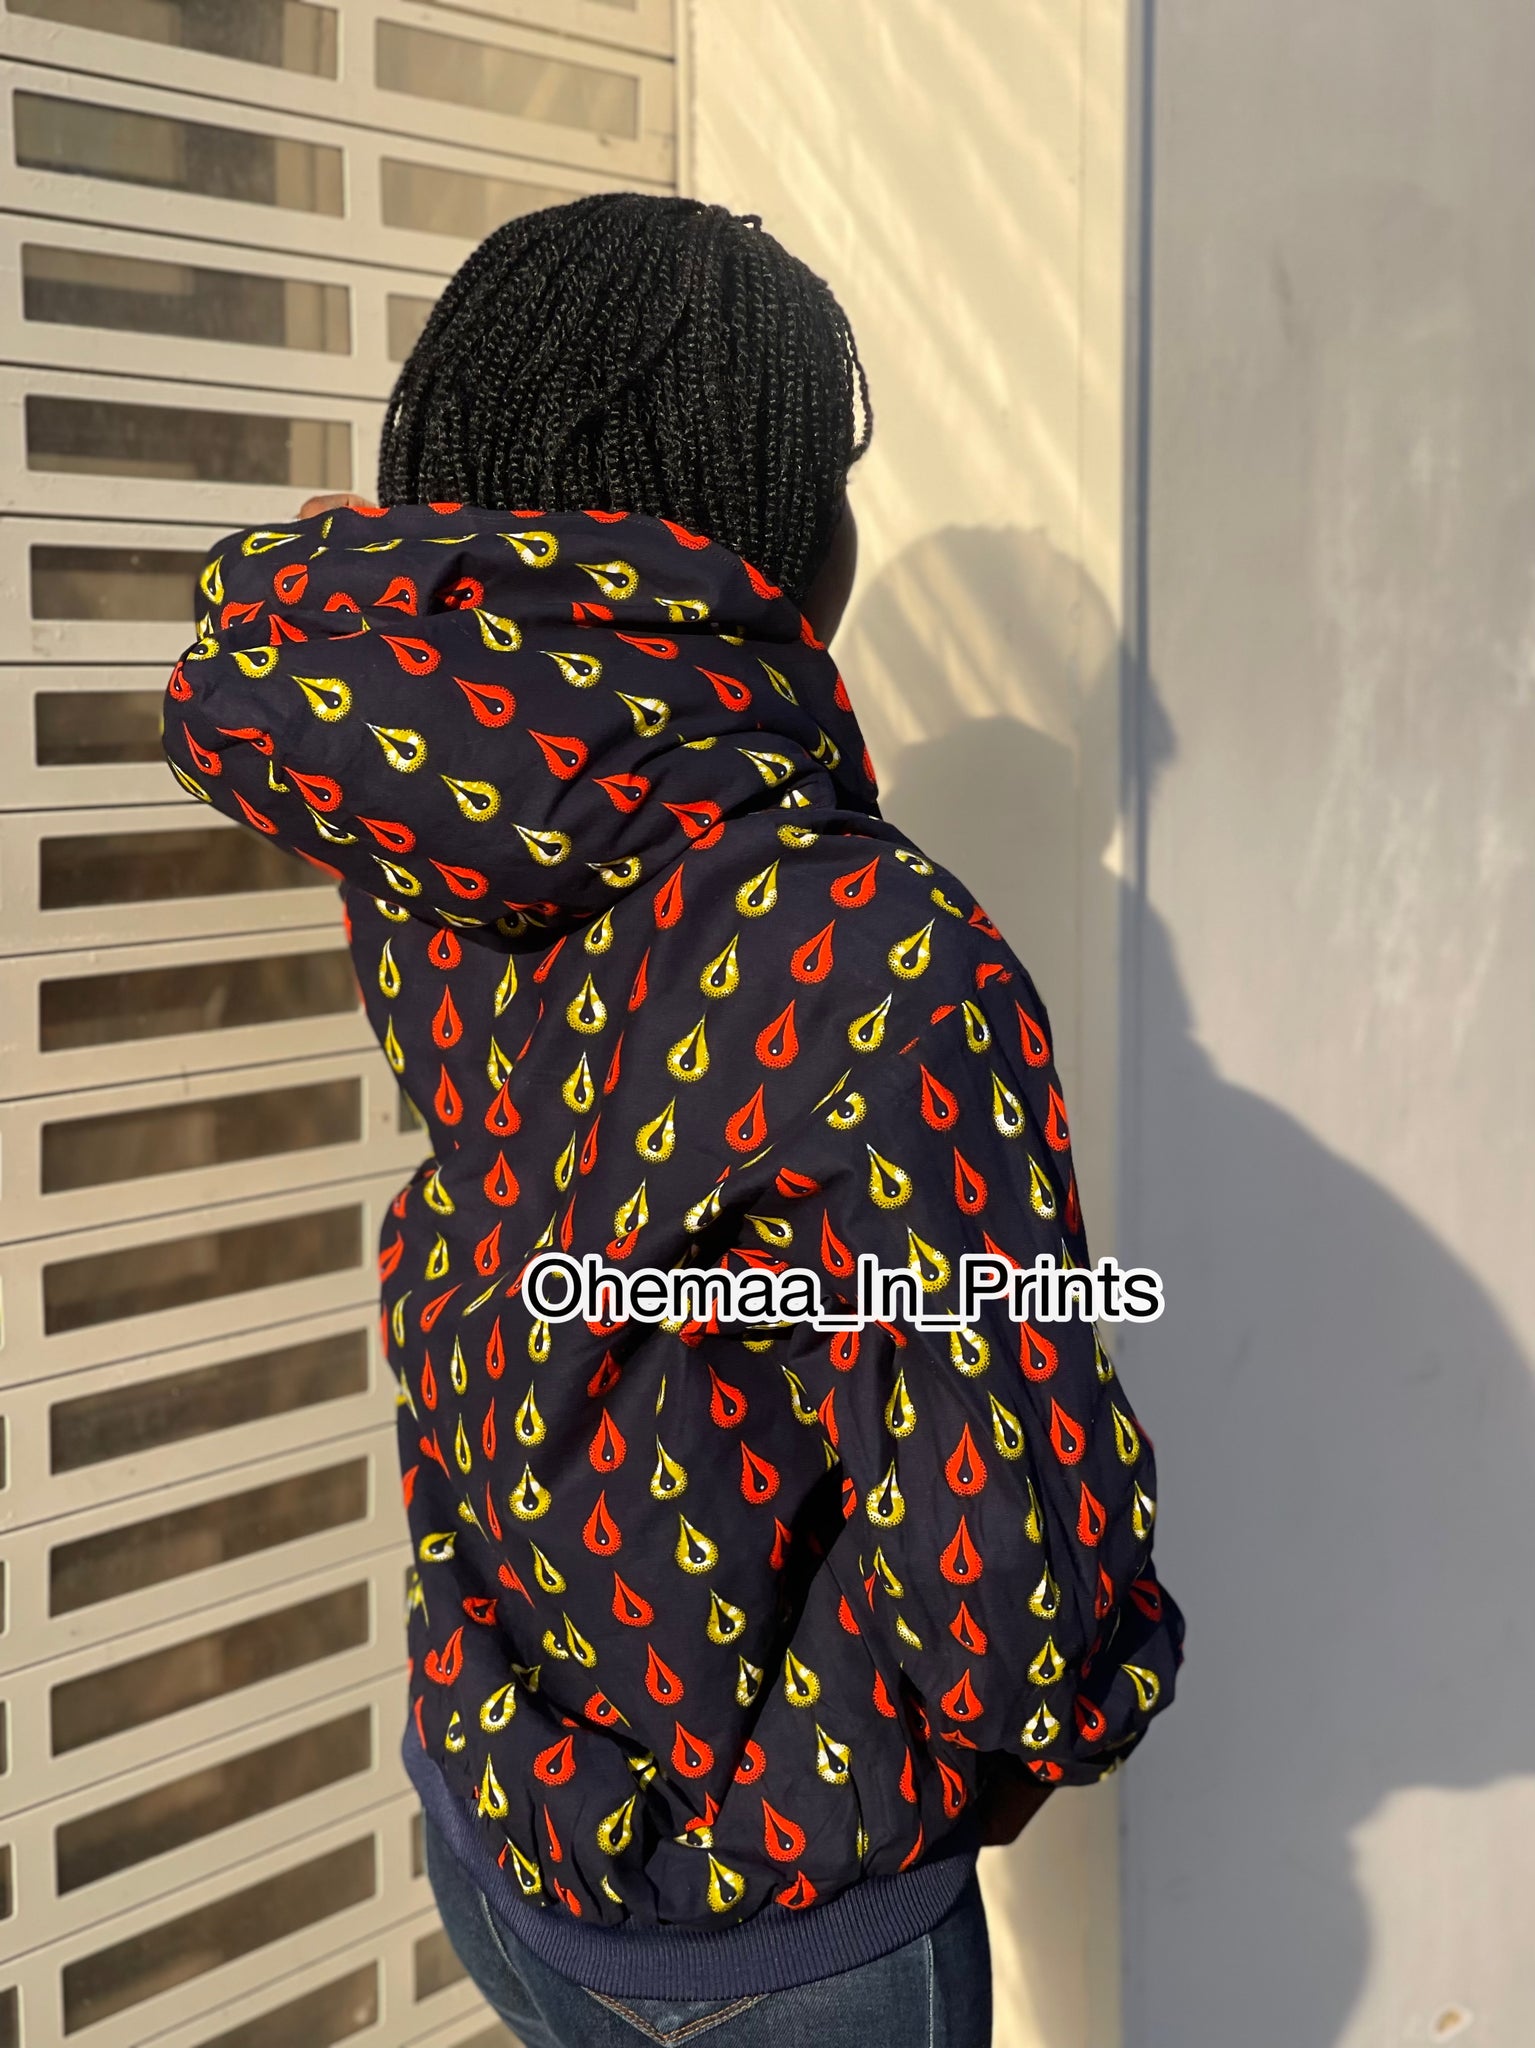 ohemaa-in-prints African Print Men’s Hoodie Bomber Jacket